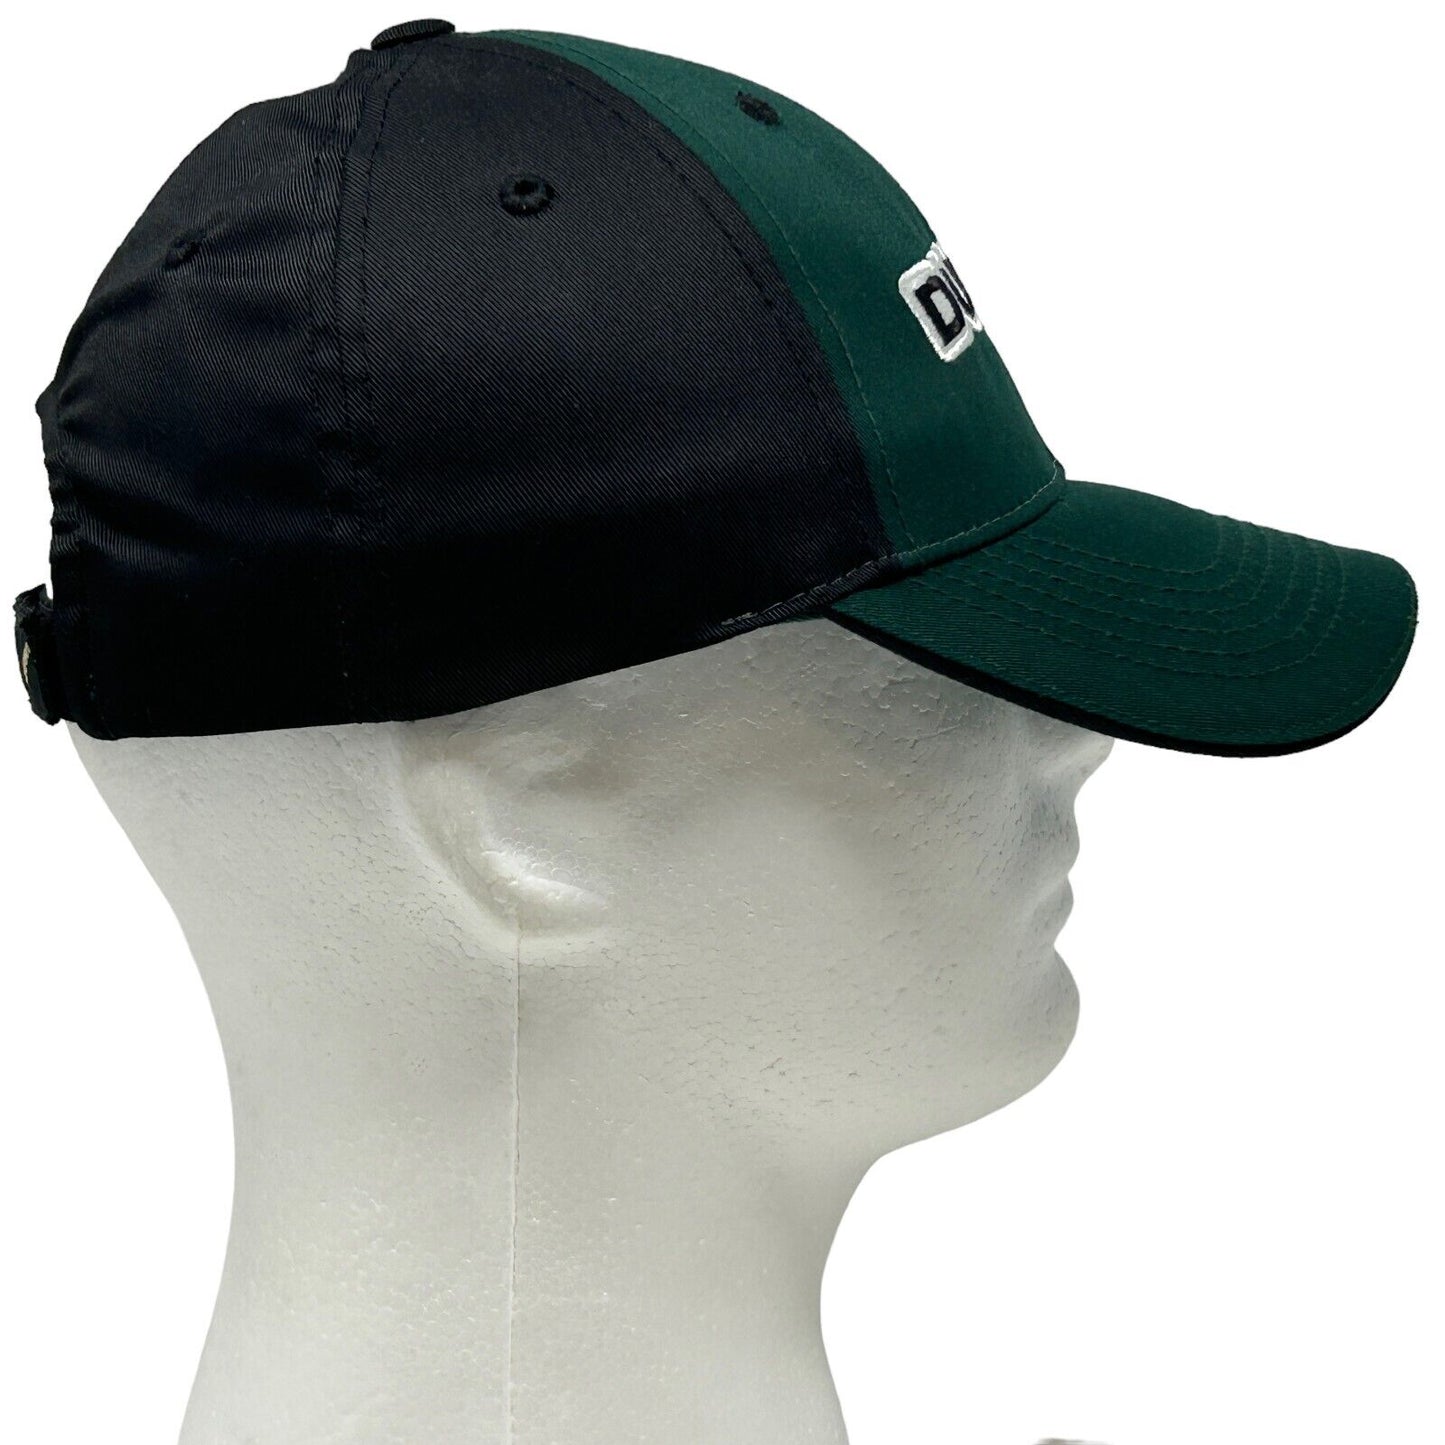 Gorra de béisbol de la Universidad de Oregon Ducks NCAA College, color verde y negro